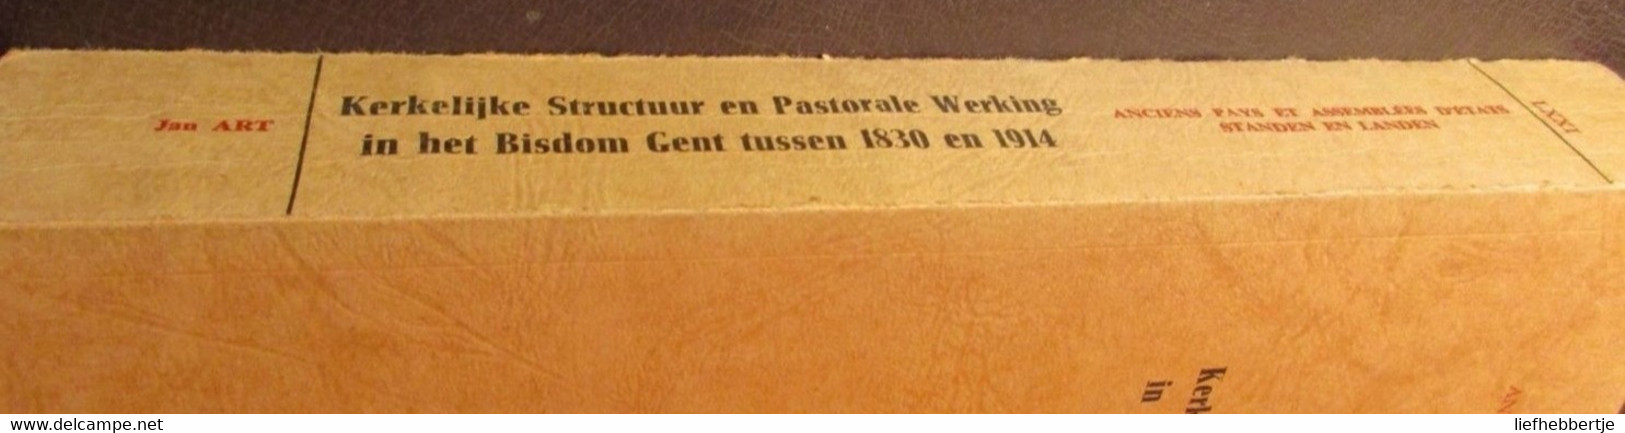 Kerkelijke Structuur En Pastorale Werking In Het Bisdom Gent Tussen 1830 En 1914 - Door Jan Art  Yy - History